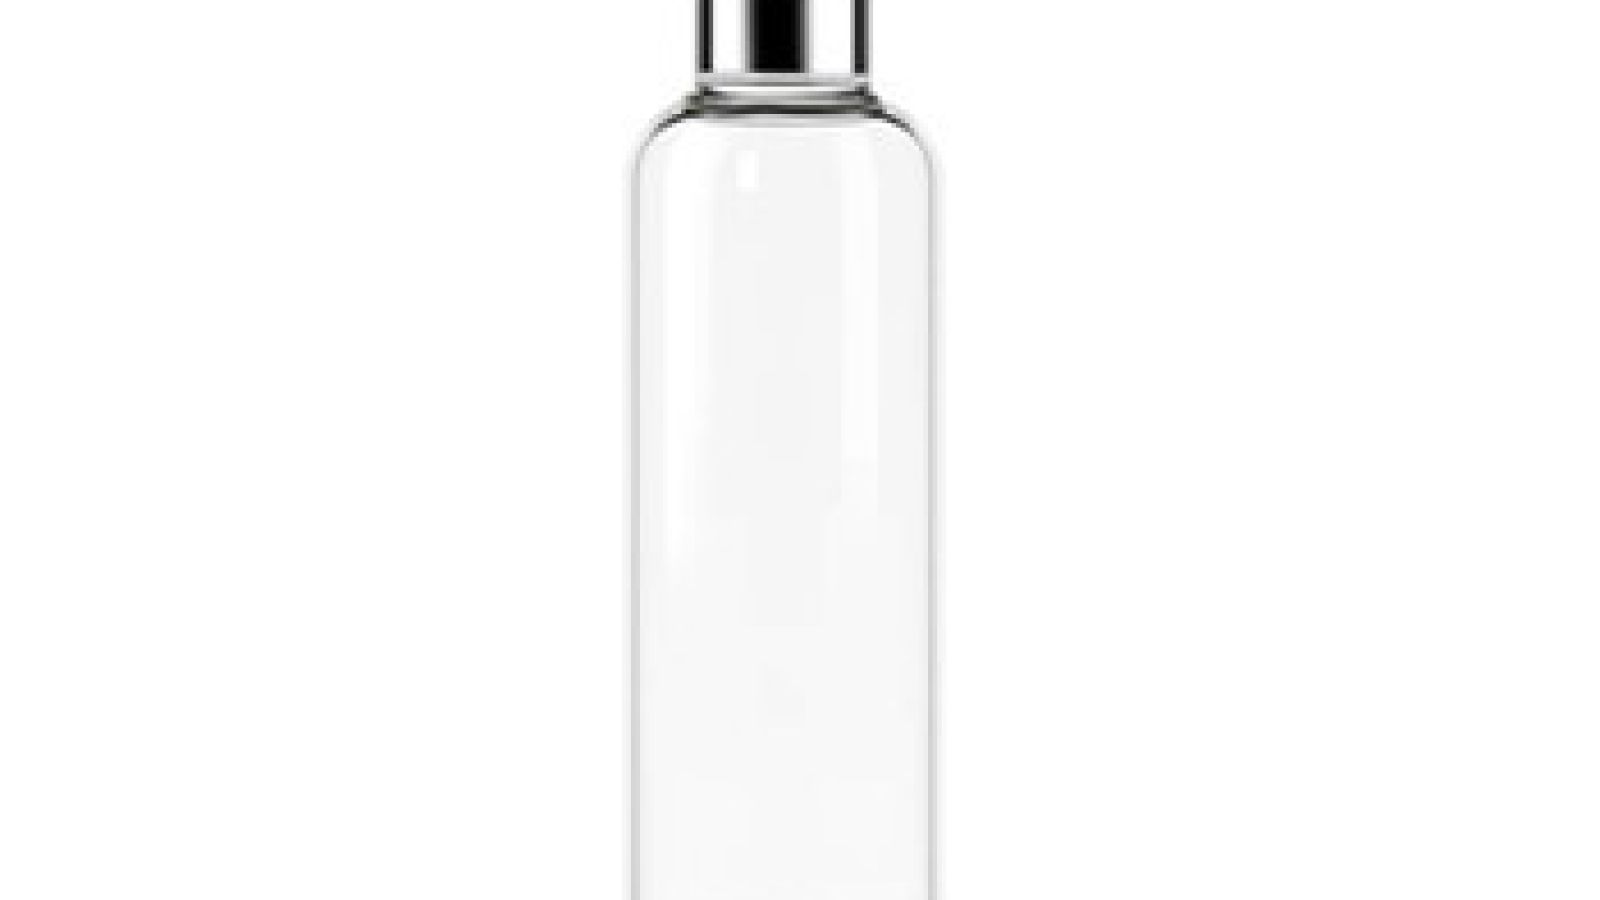 Bottiglia Borraccia in vetro borosilicato, 550 ml, lavabile in lavastoviglie,  senza BPA - PEARL